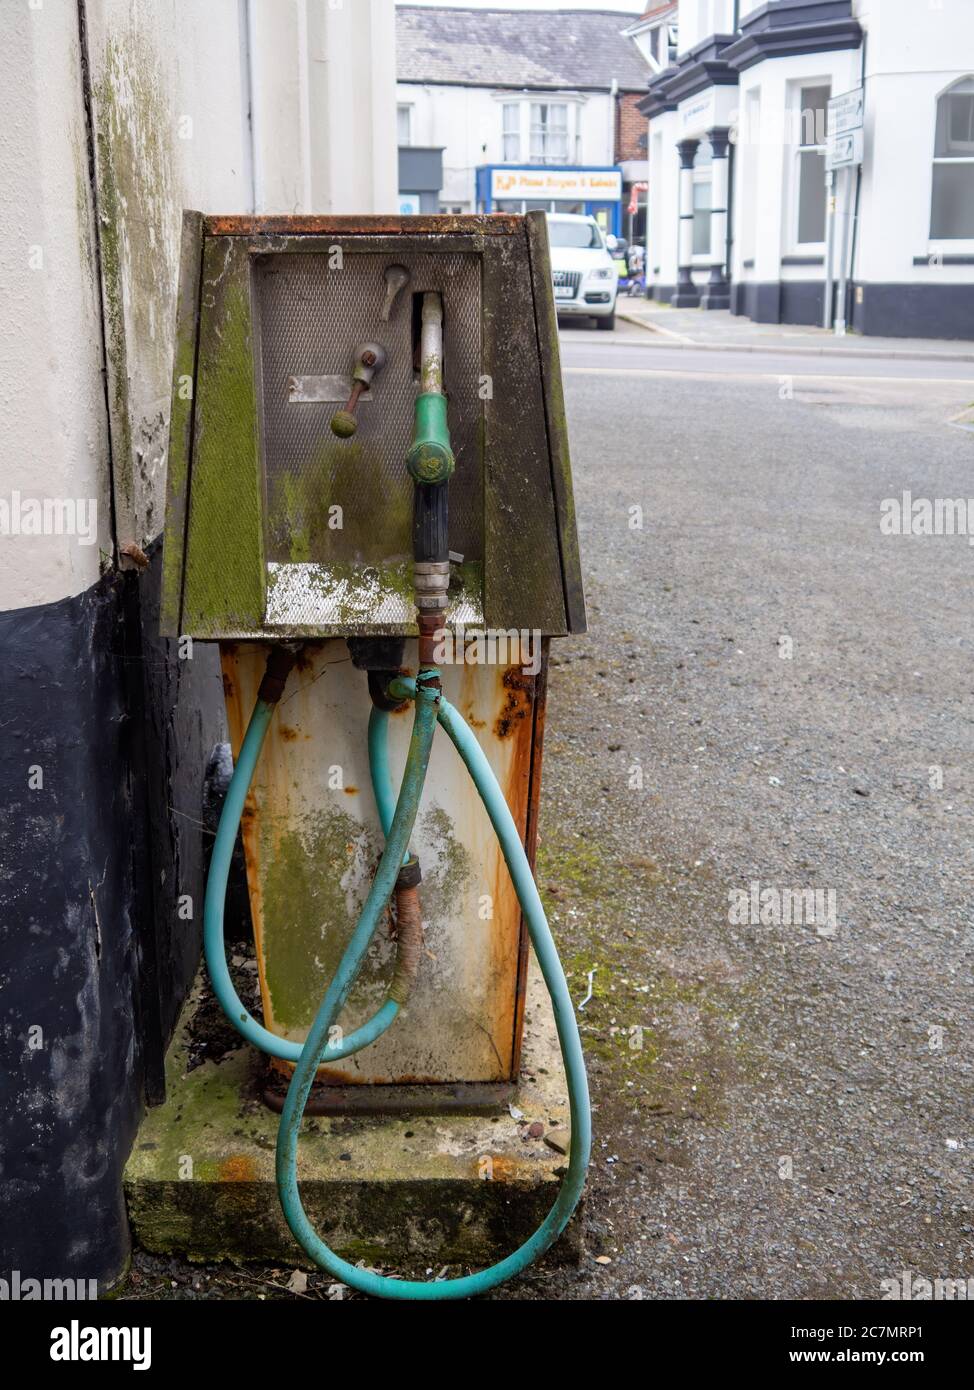 HOLSWORTHY, DEVON, UK - JULY 16 2020: An old diesel pump distributor rusting. Stock Photo